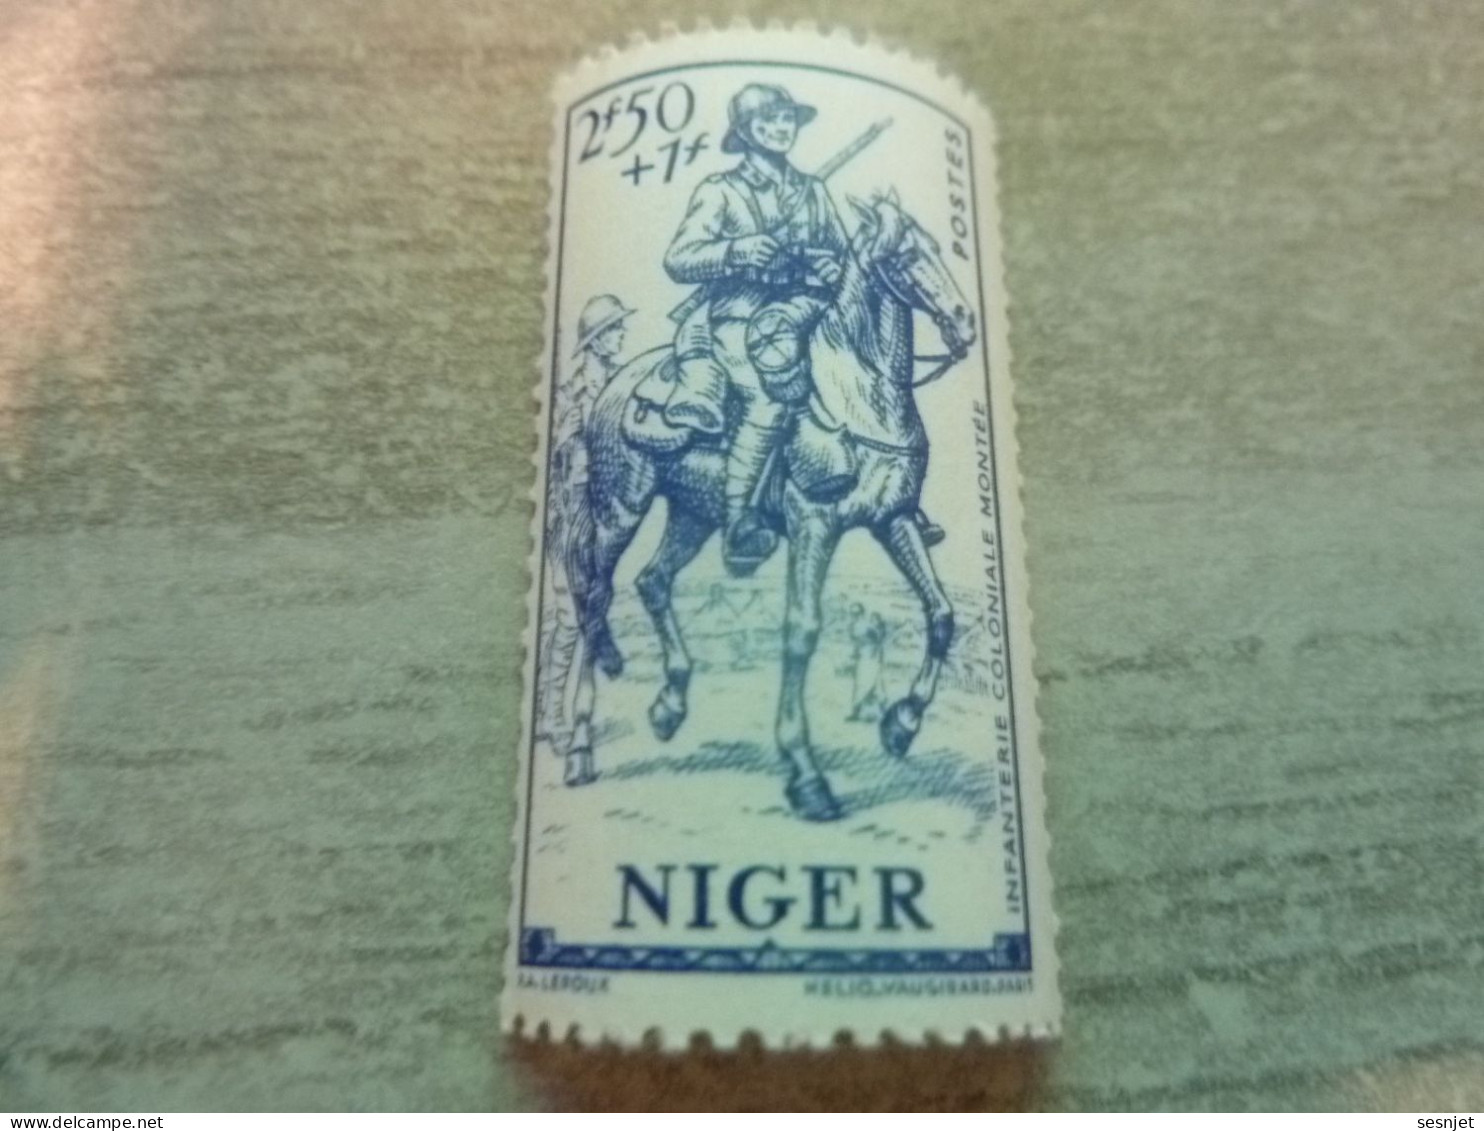 Niger - Défense De L'Empire - Infanterie Coloniale Montée - 2f.50+1f. - Yt 88 - Bleu - Neuf Sans Trace - Année 1941 - - Unused Stamps